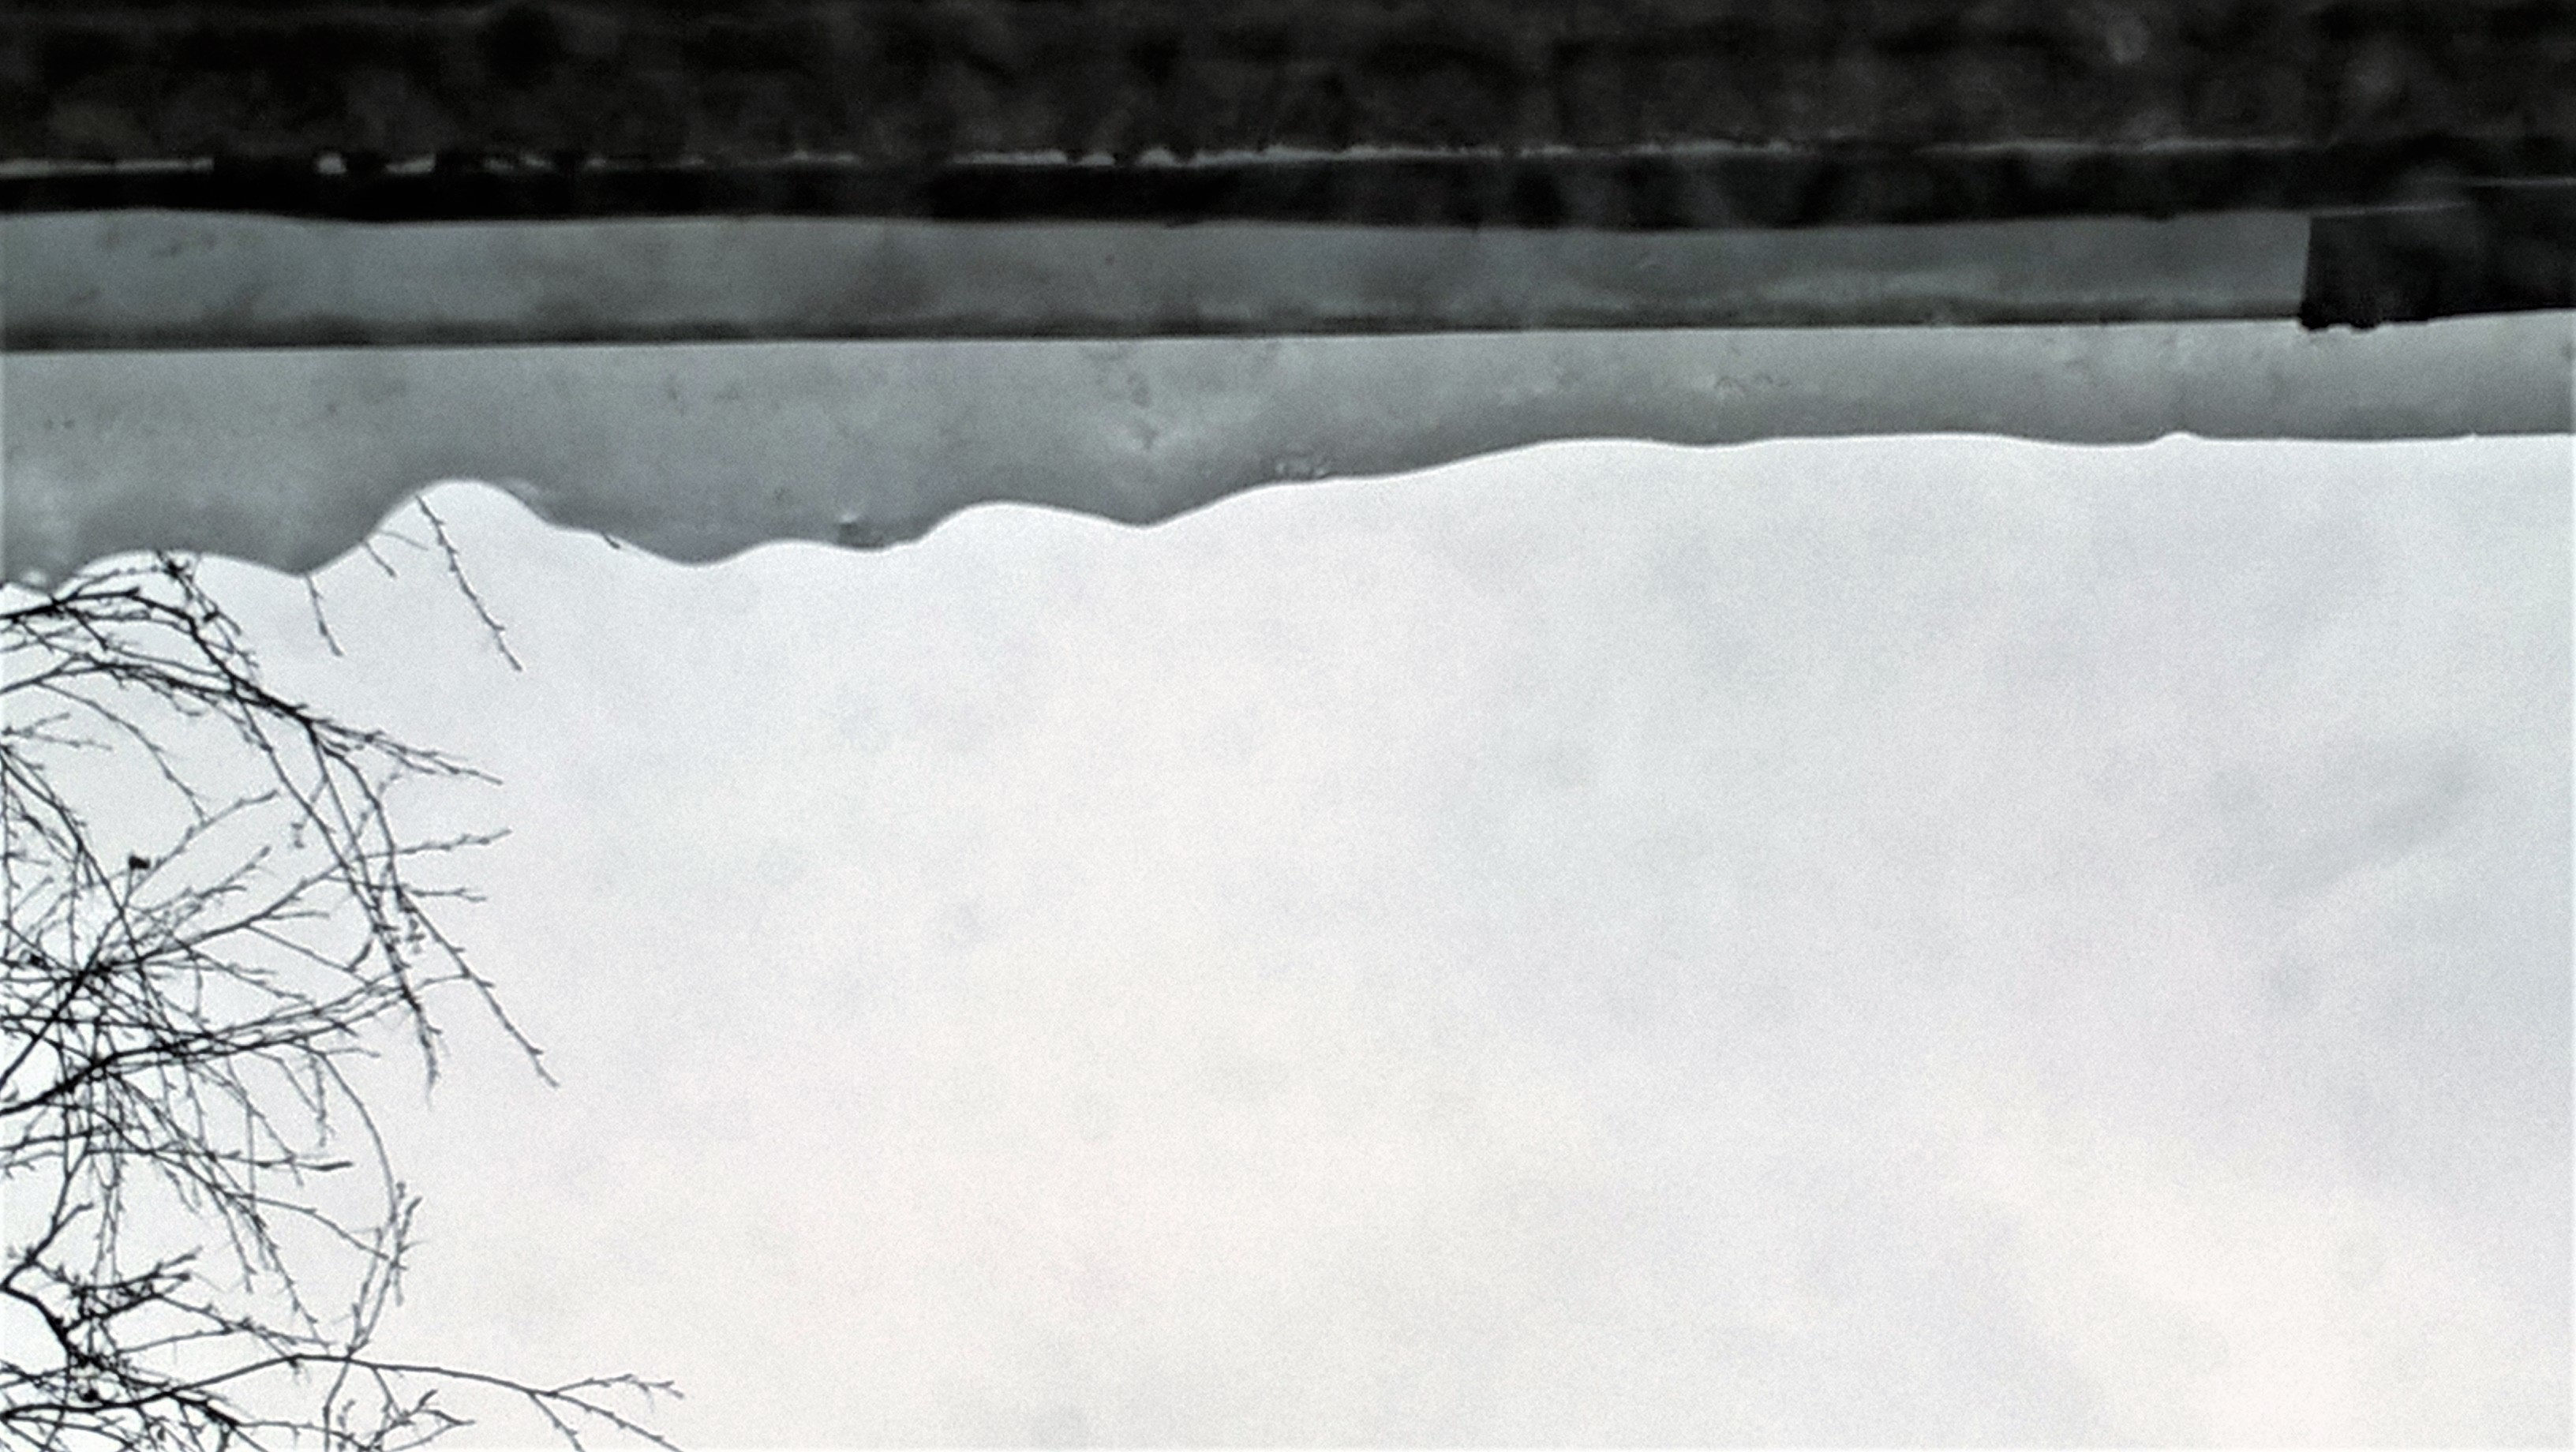 с крыши дома №1 по пр. Александровской фермы(Невский район)срываются огромные глыбы льда прямо на выходы из парадных// Читательница "Фонтанки" Ирина